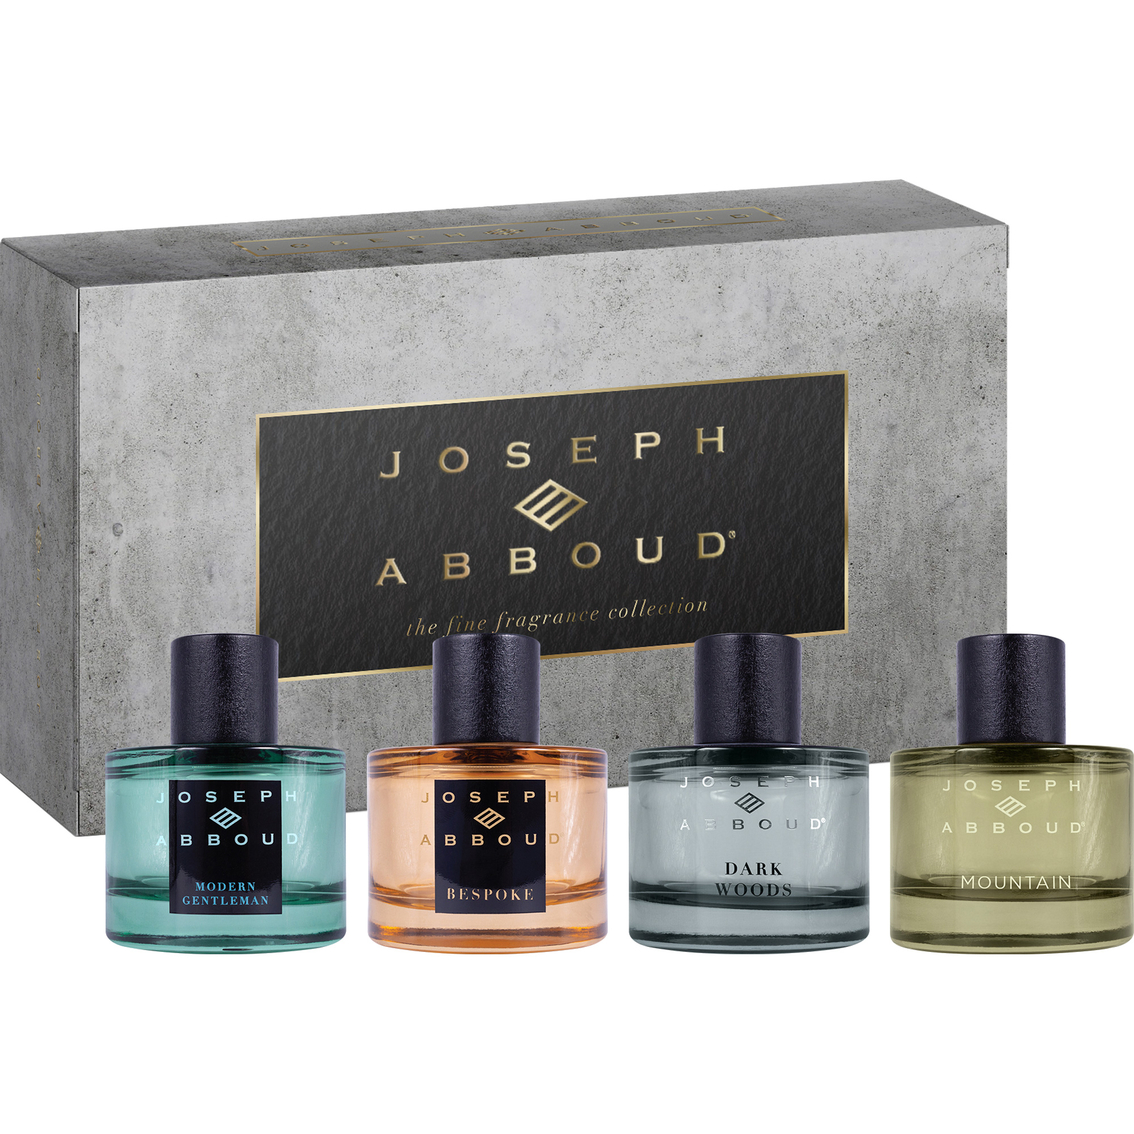 Joseph Abboud Fine Fragrance Coffret 4 Pc. Set | Gifts Sets For Him ...